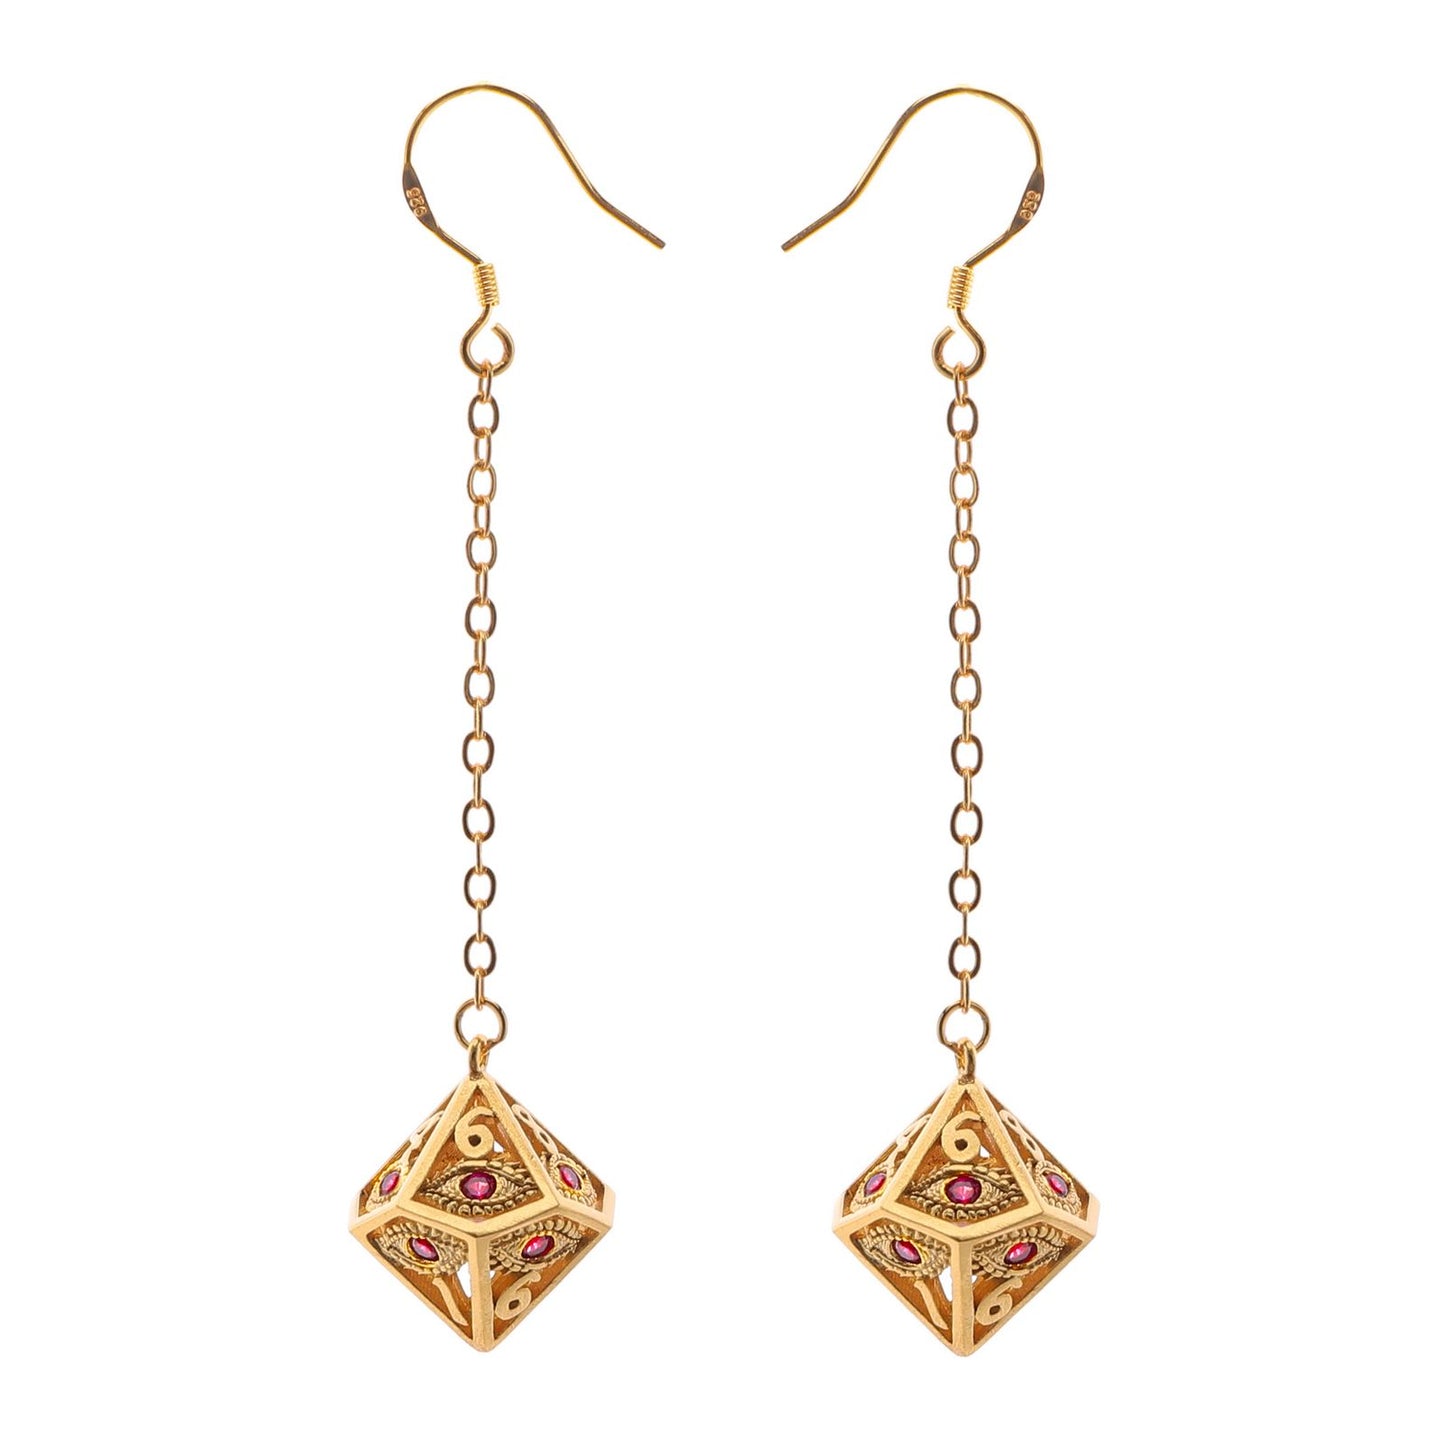 Dragon's eye D10 earrings-Gold w/Red gems